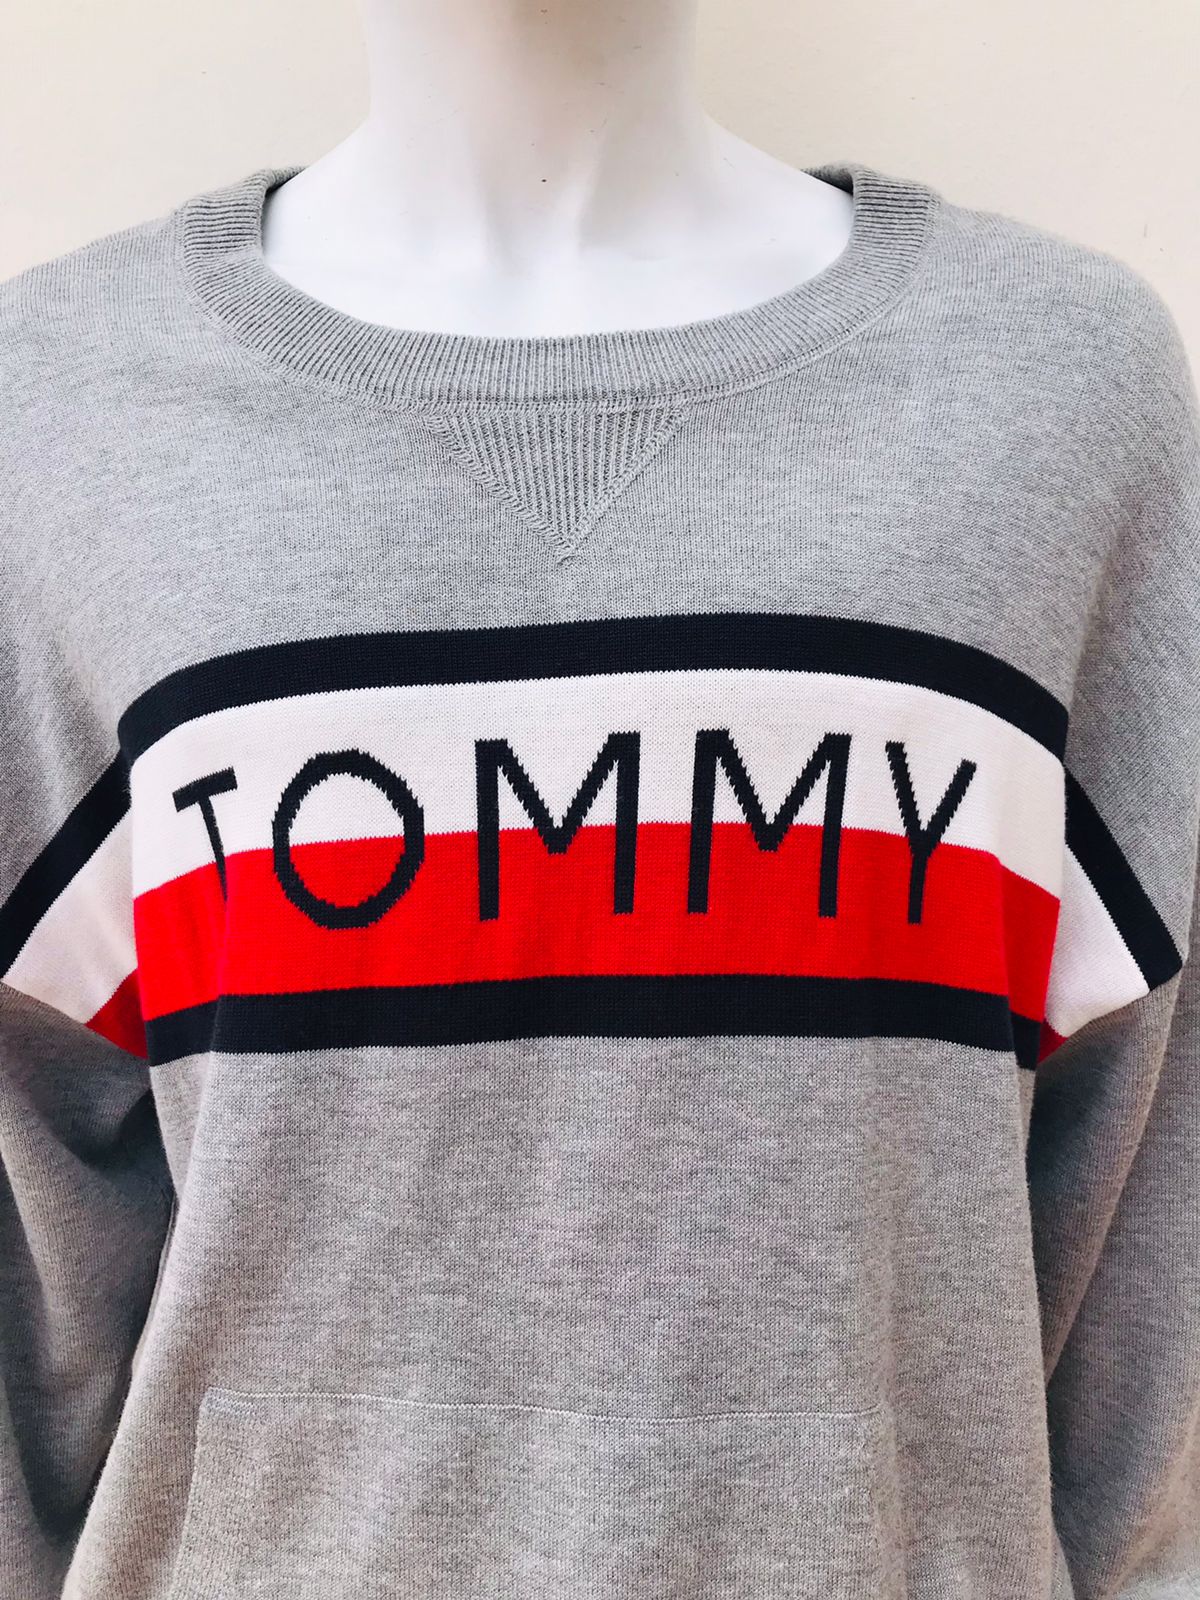 Sueter Tommy Hilfiger original, gris con letras TOMMY en Banda en color blanco, rojo y azul, manga larga.